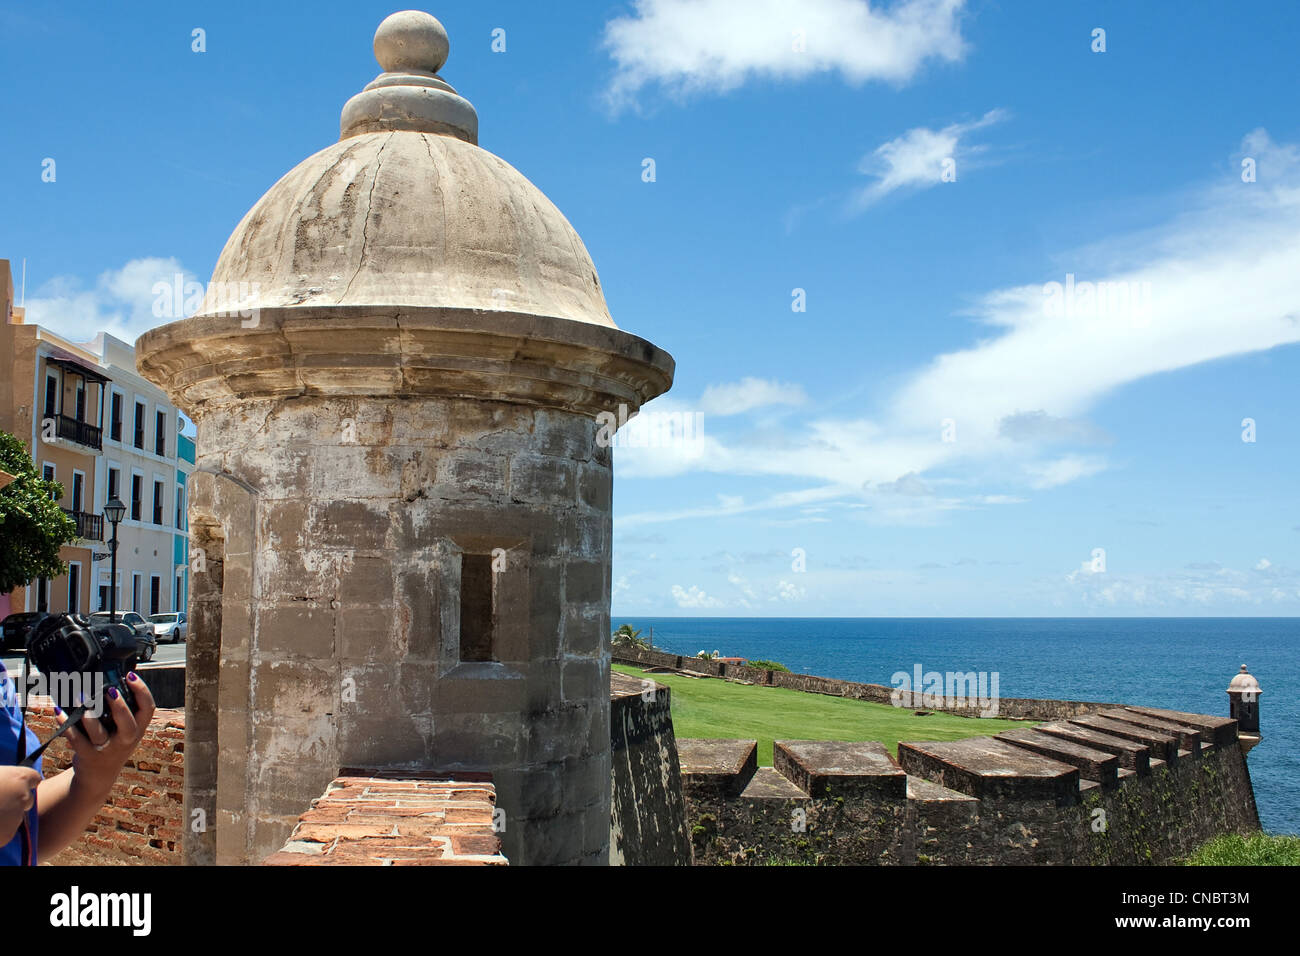 Ein Blick auf den historischen San Cristobal Festung Türmen befindet sich in Old San Juan Puerto Rico mit Blick auf El Morro. Stockfoto